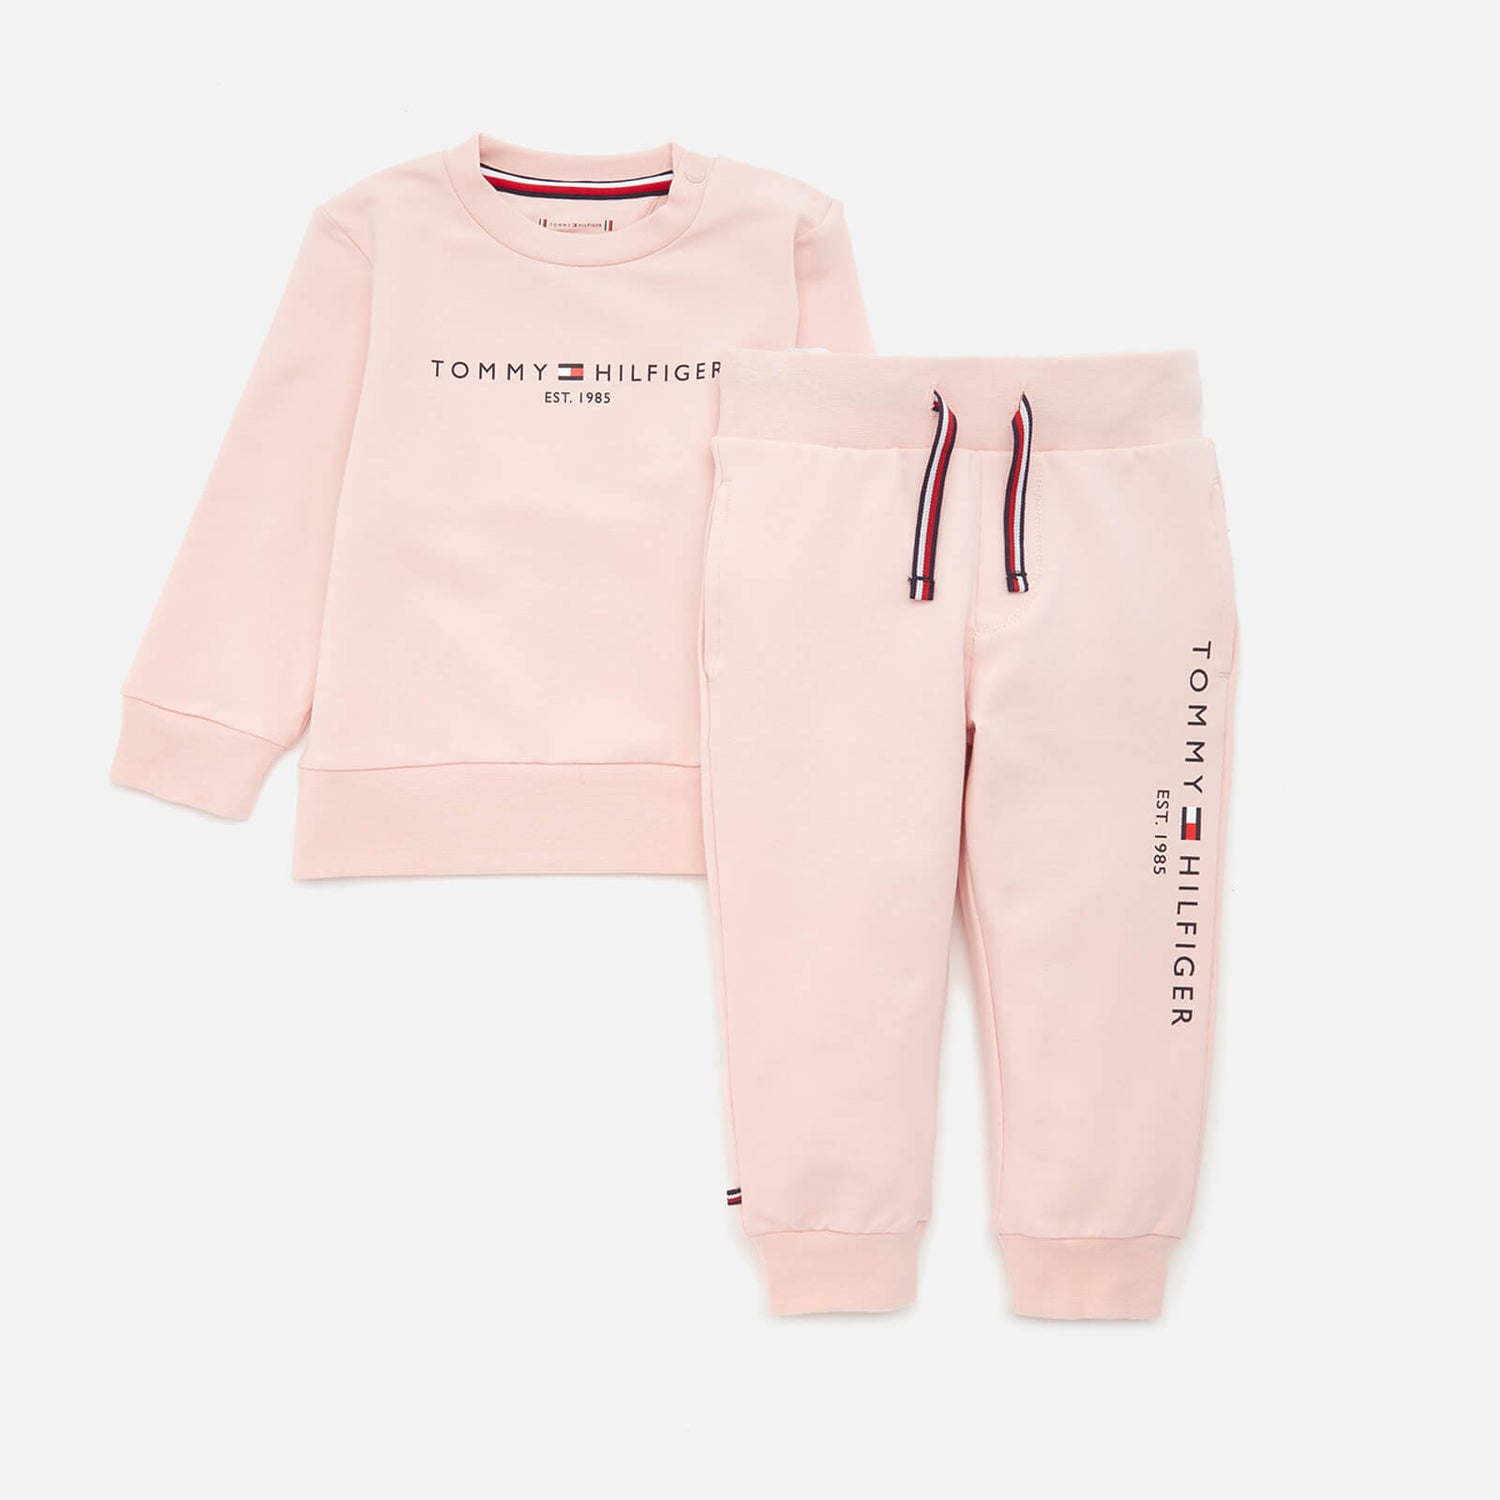 Tommy Hilfiger Babies' Essential Set - Pink